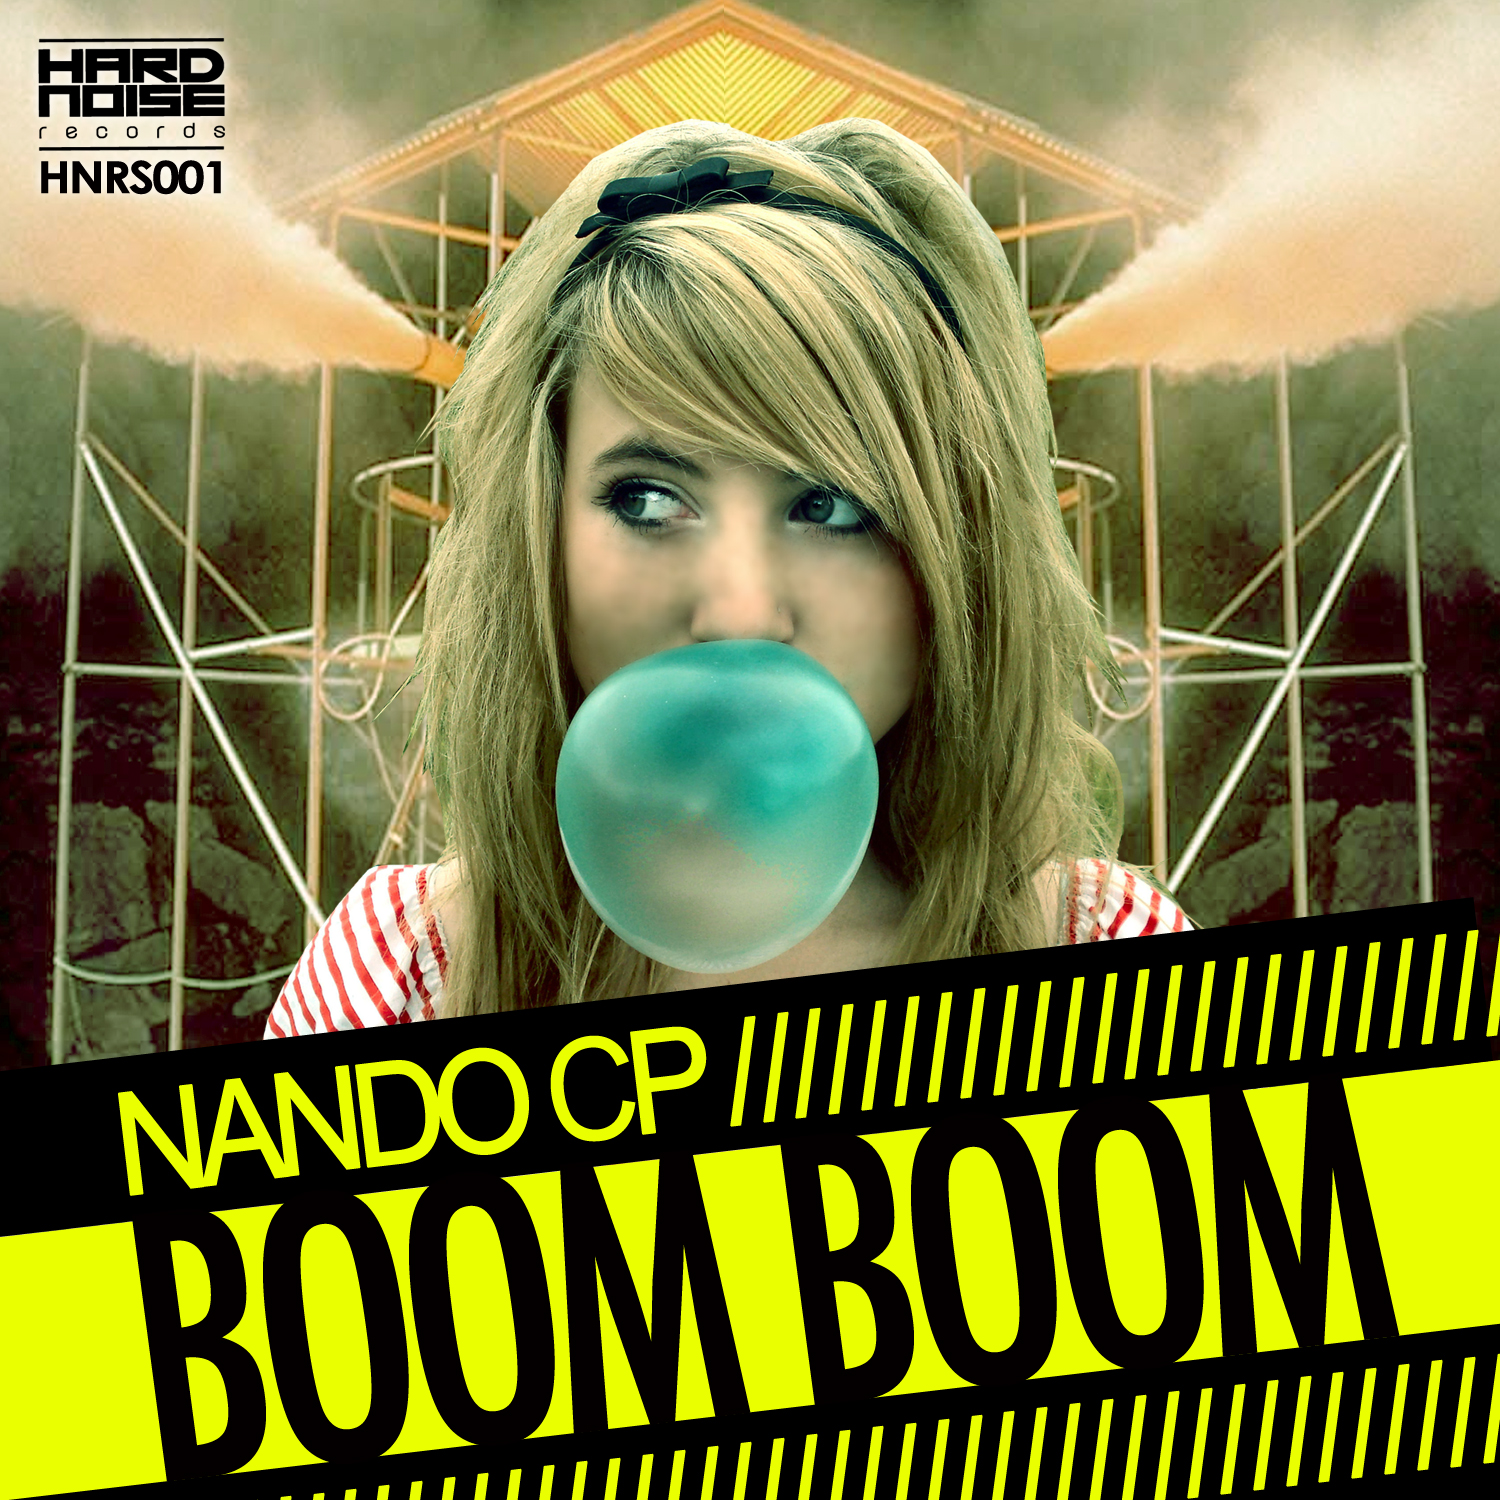 [HNRS001] Nando CP - Boom Boom Artworks-000033548666-soeavn-original